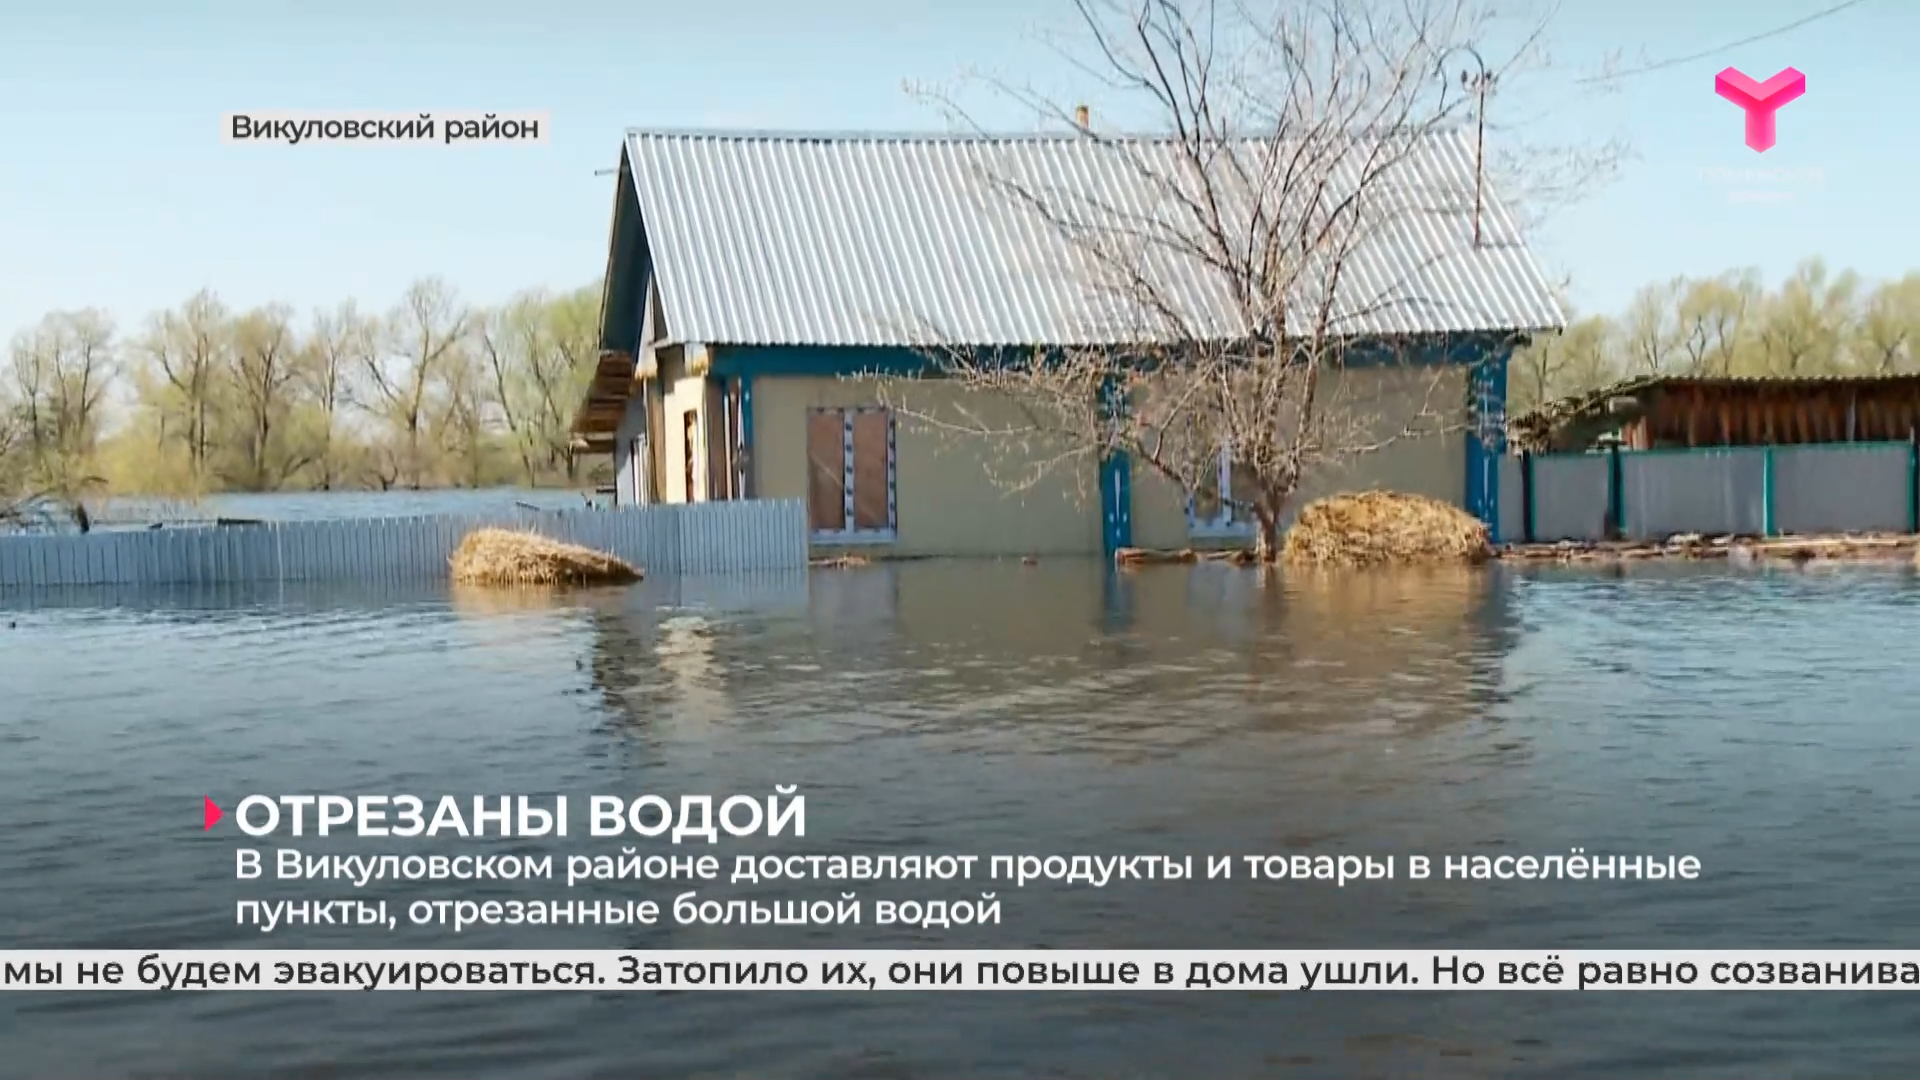 В Викуловском районе доставляют продукты и товары в населённые пункты, отрезанные большой водой